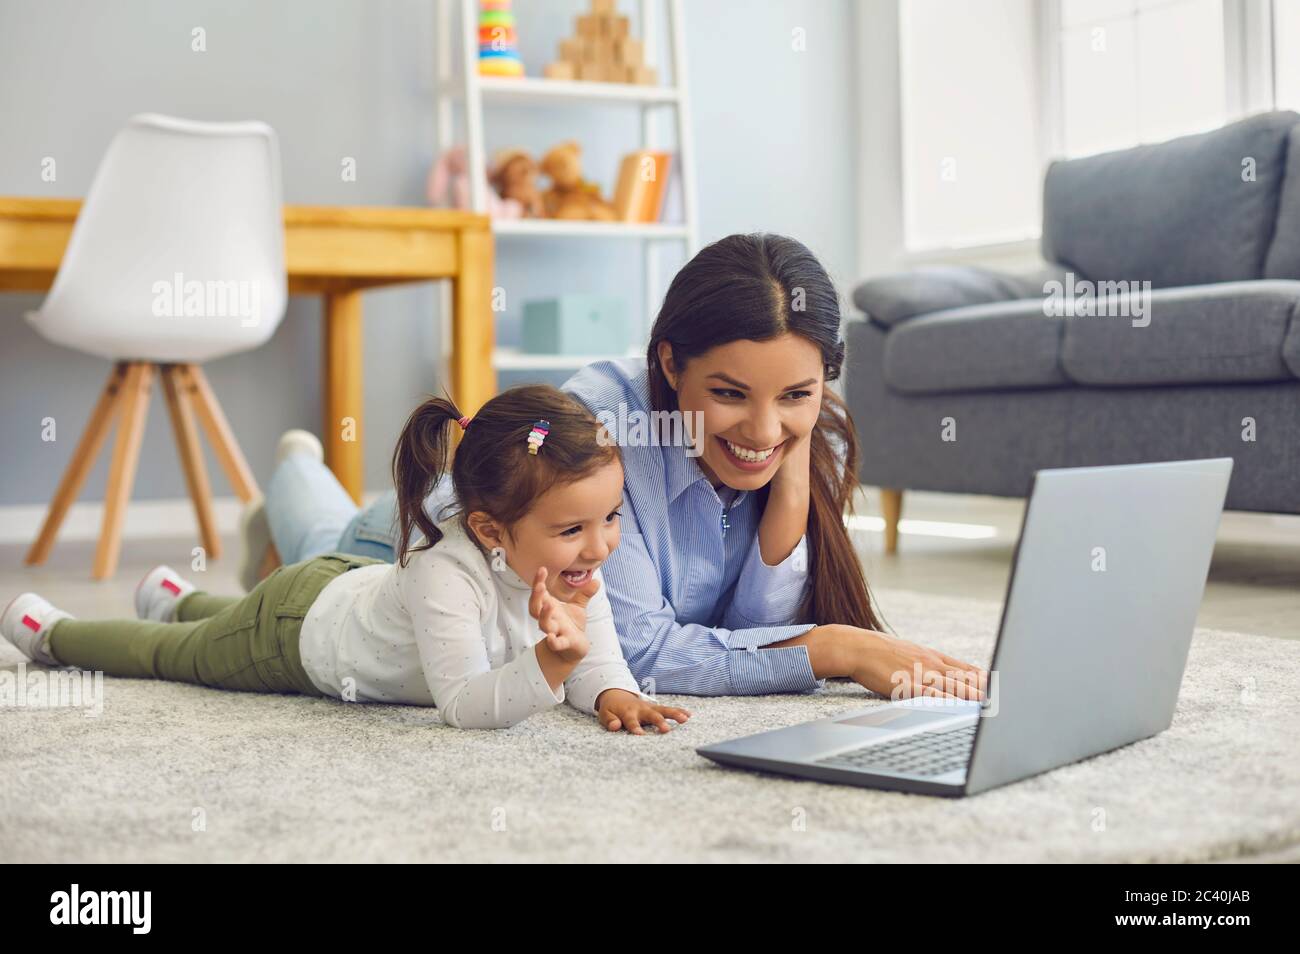 Maman avec sa fille regardant des dessins animés ou des vidéos de divertissement en ligne à la maison. Parents et enfants avec ordinateur portable à l'étage Banque D'Images